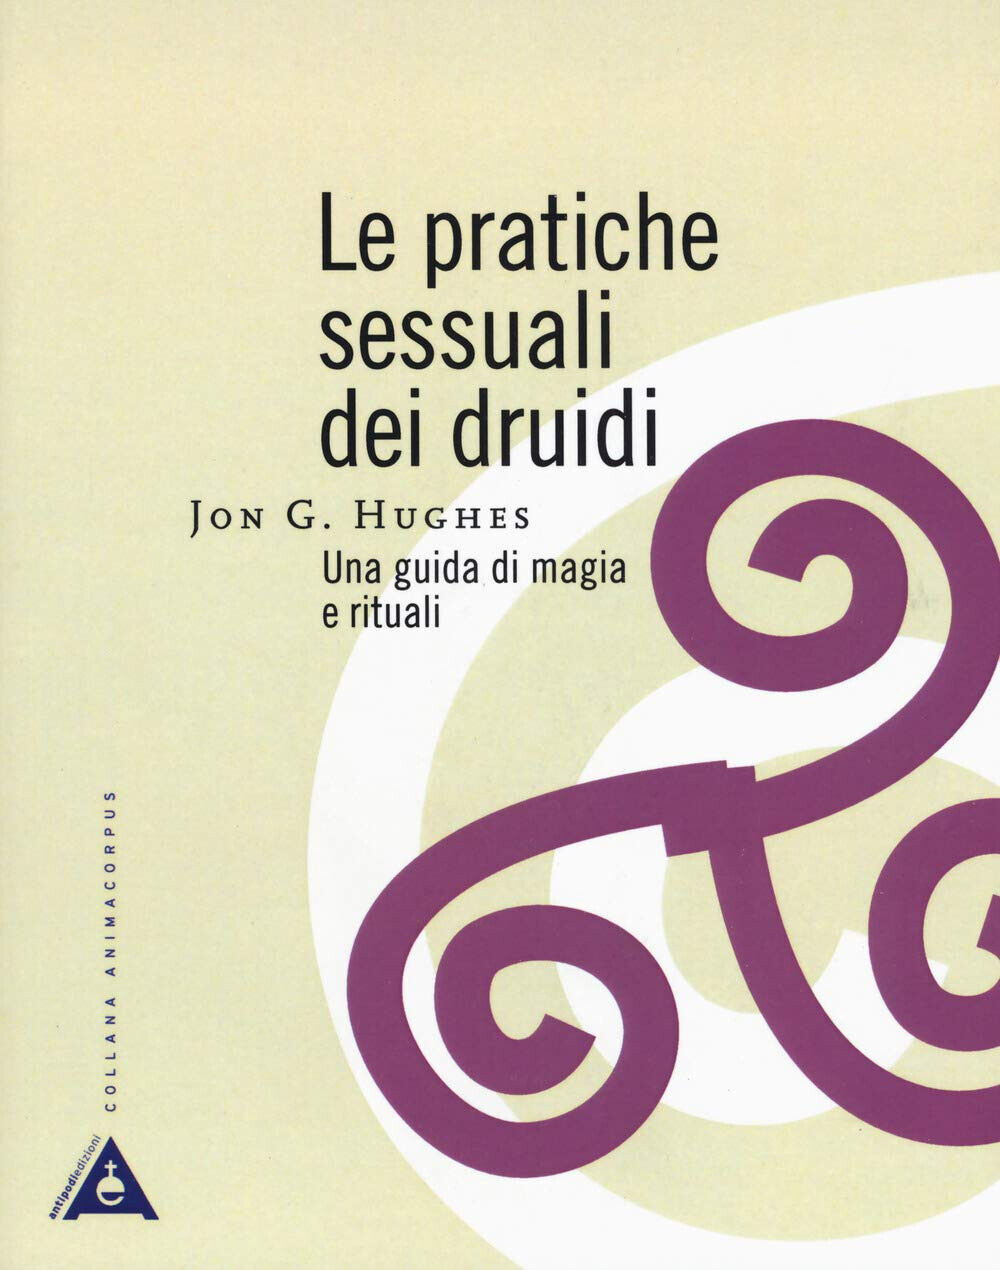 Le pratiche sessuali dei druidi. Una guida di magia e rituali-Jon G. Hughes-2019 libro usato